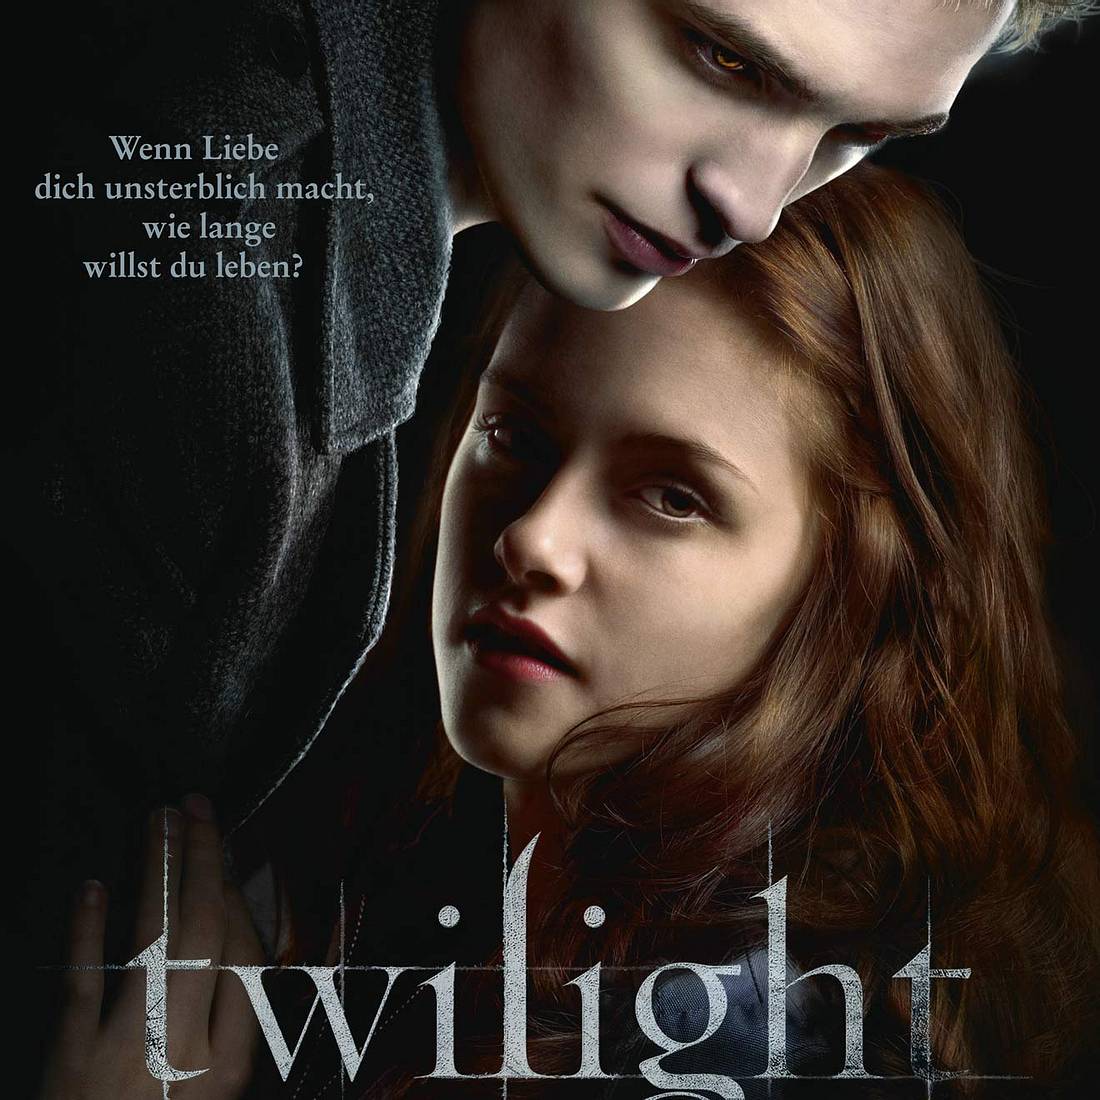 Twilight Geheimnis gelüftet: Darum sind die Cullens so reich!